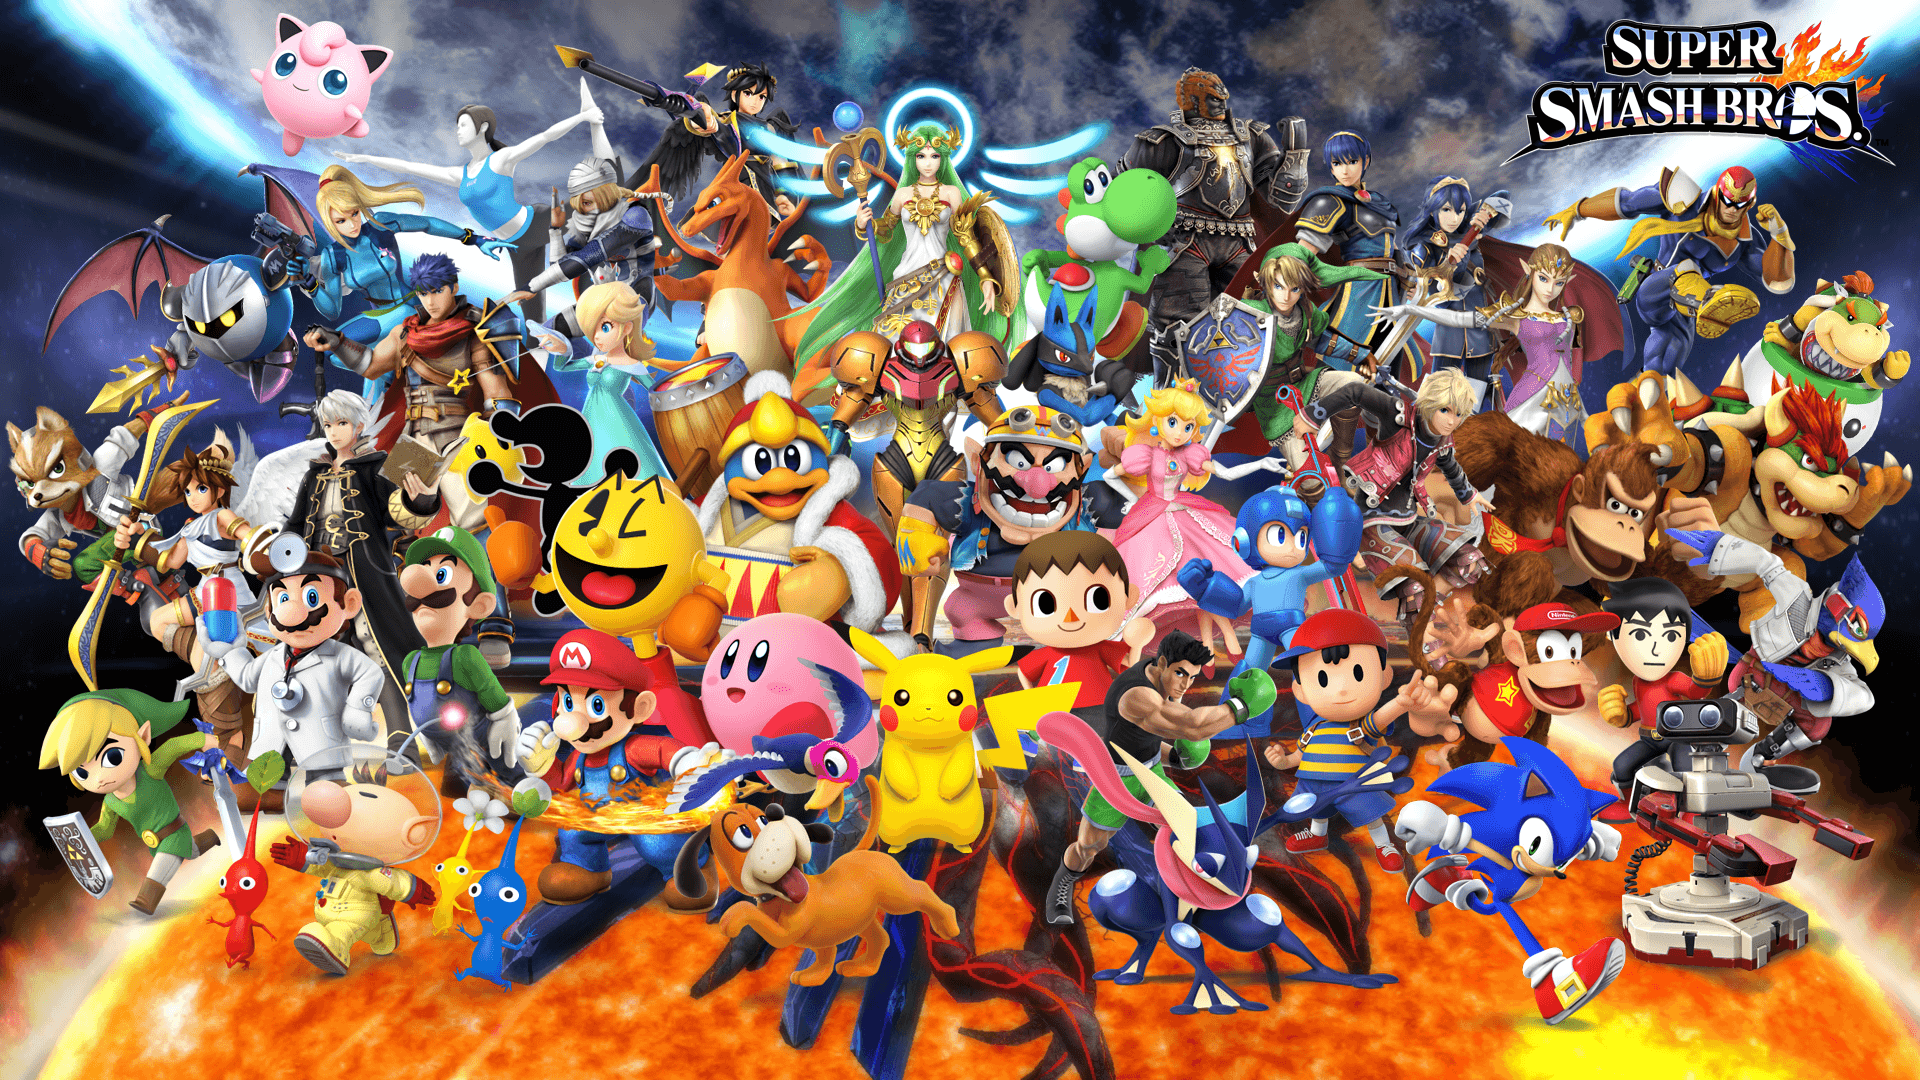 Super Smash Bros Wallpaper HD. Smash bros wii